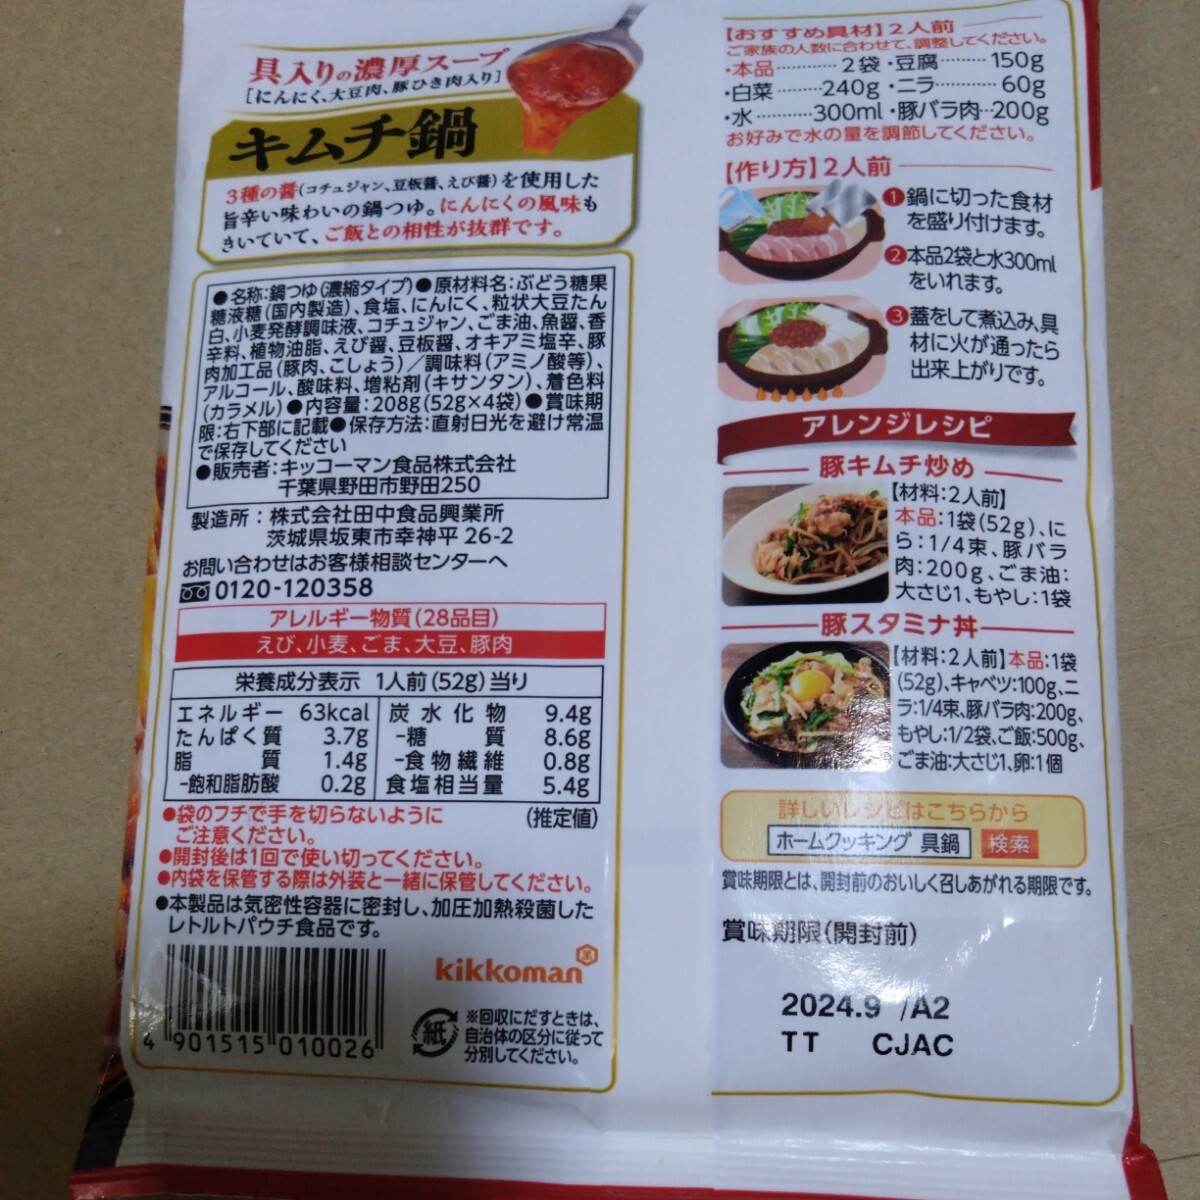 6 месяц 3 до. ограничение цена # 1558 иен товар #. кастрюля кимчи кастрюля 4 пакет 